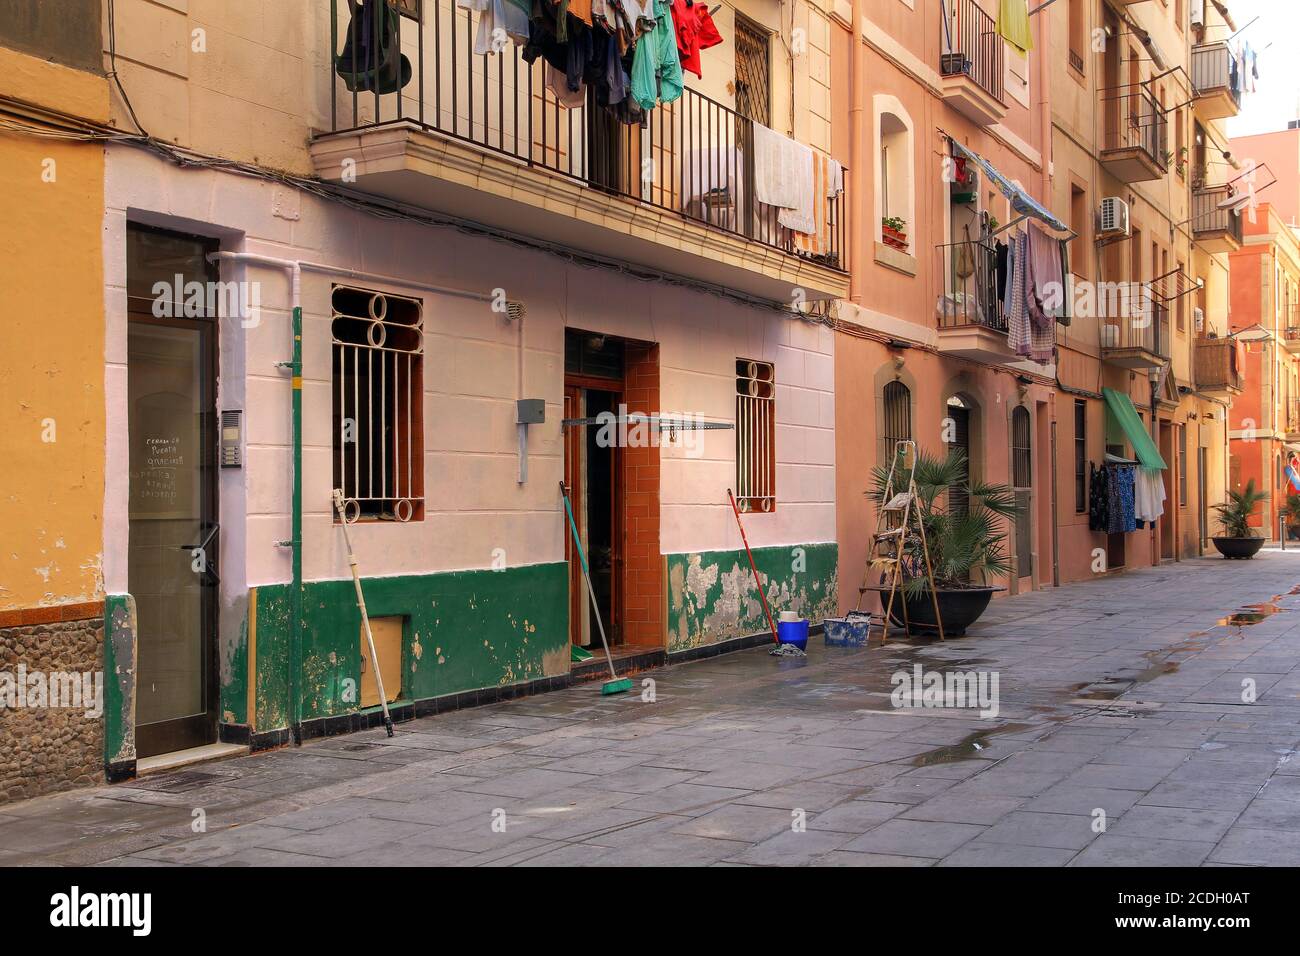 Une scène d'une petite rue piétonne à la Barceloneta, un quartier de Barcelone, en Espagne. Construit au XVIIIe siècle, il est encore habité par beaucoup de personnes Banque D'Images